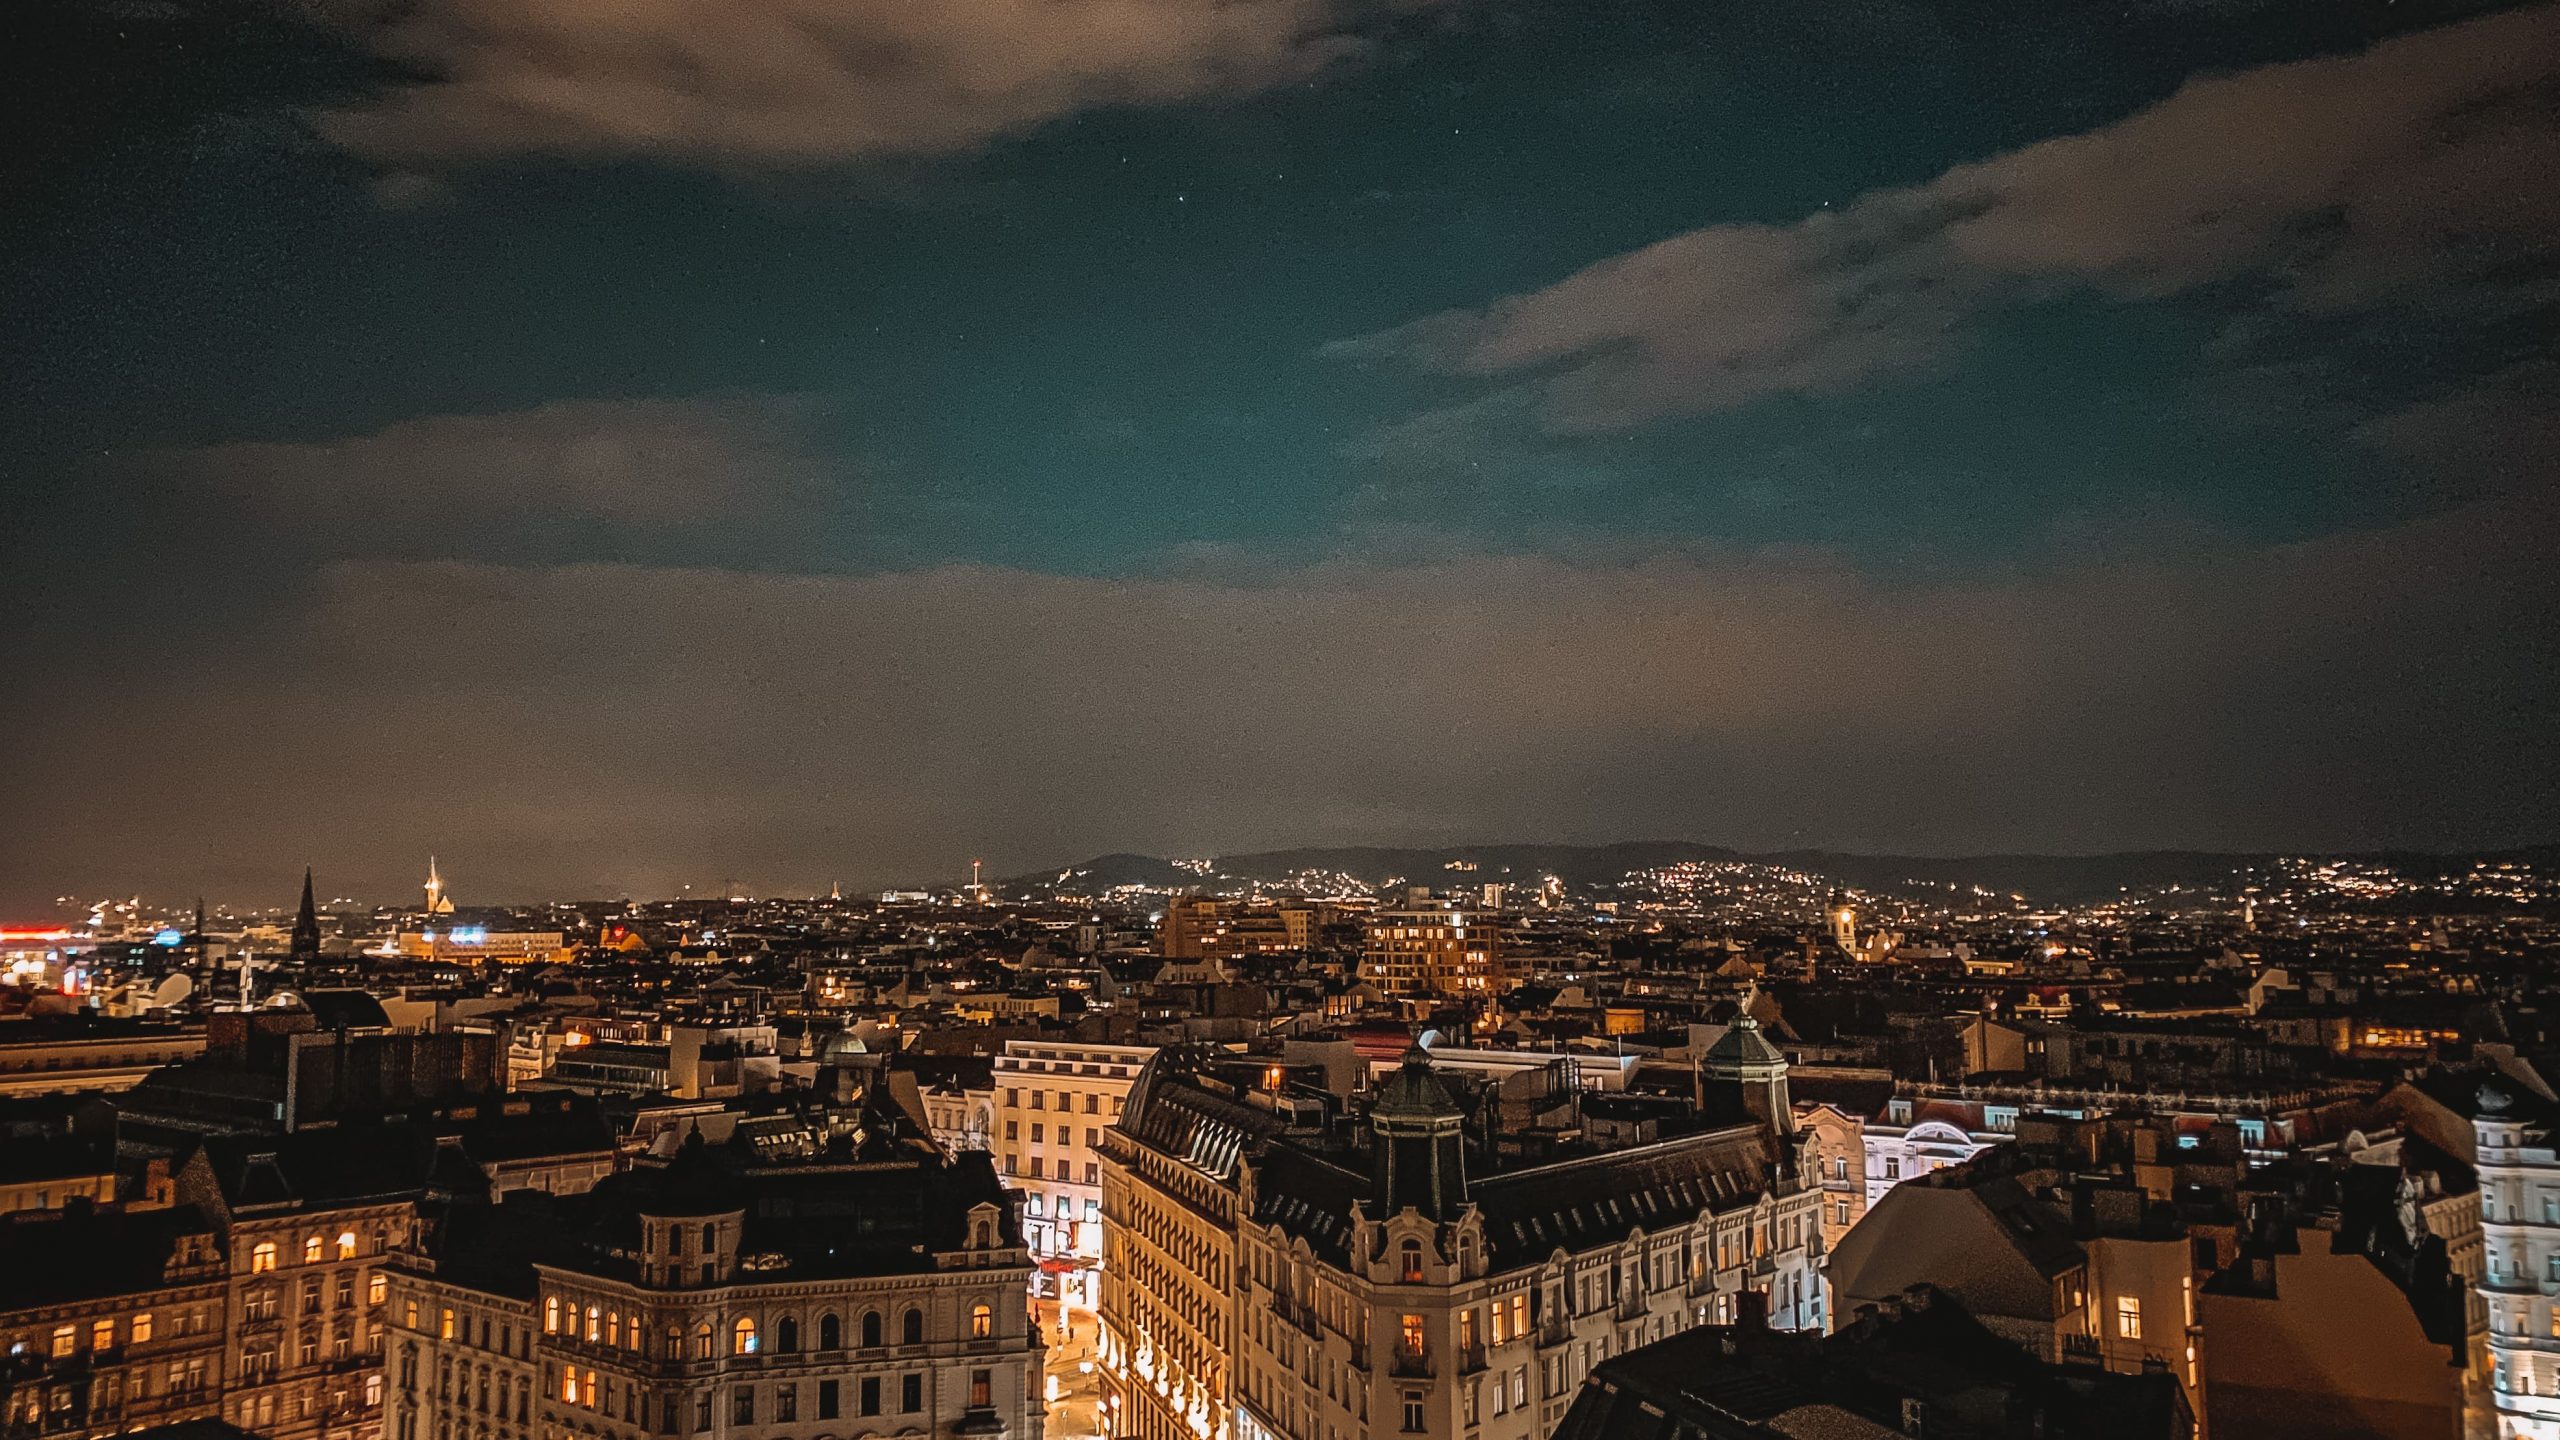 Ausblick über den Dächern Wiens bei Nacht